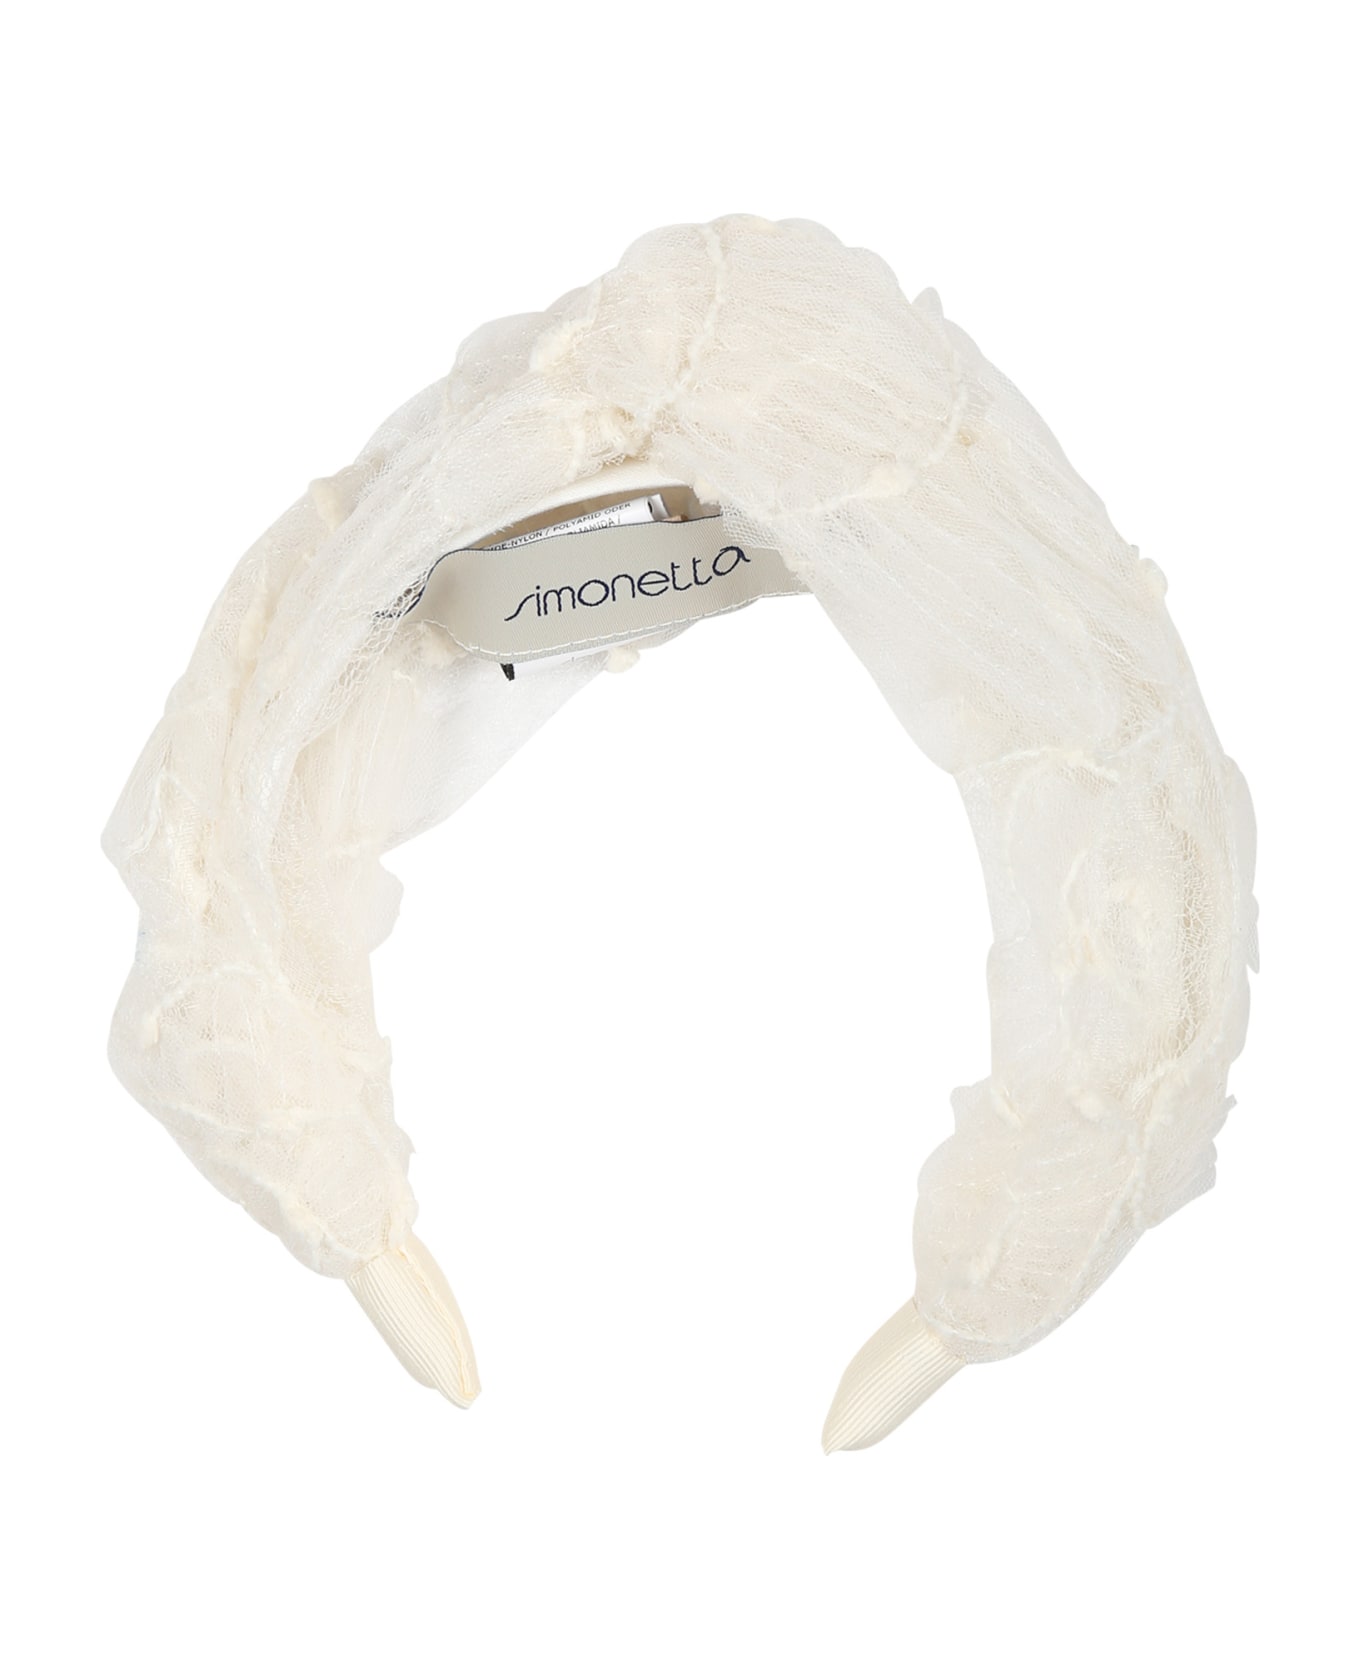 Simonetta Ivory Headband For Girl - Ivory